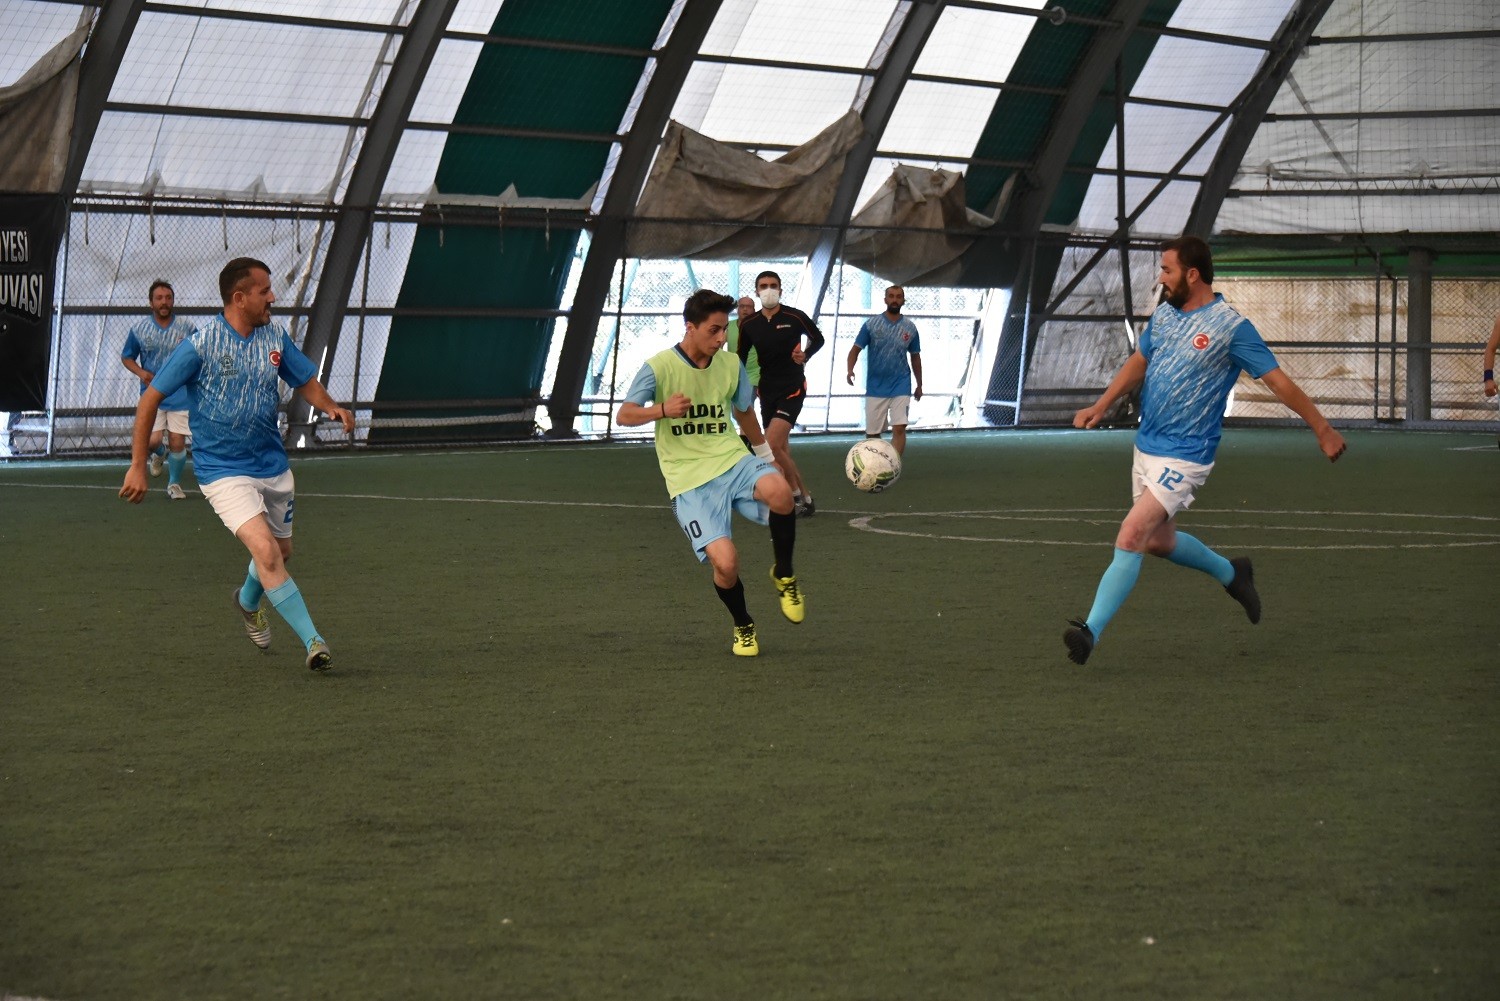 Karatay Belediyesi birimler arası futbol turnuvası başladı